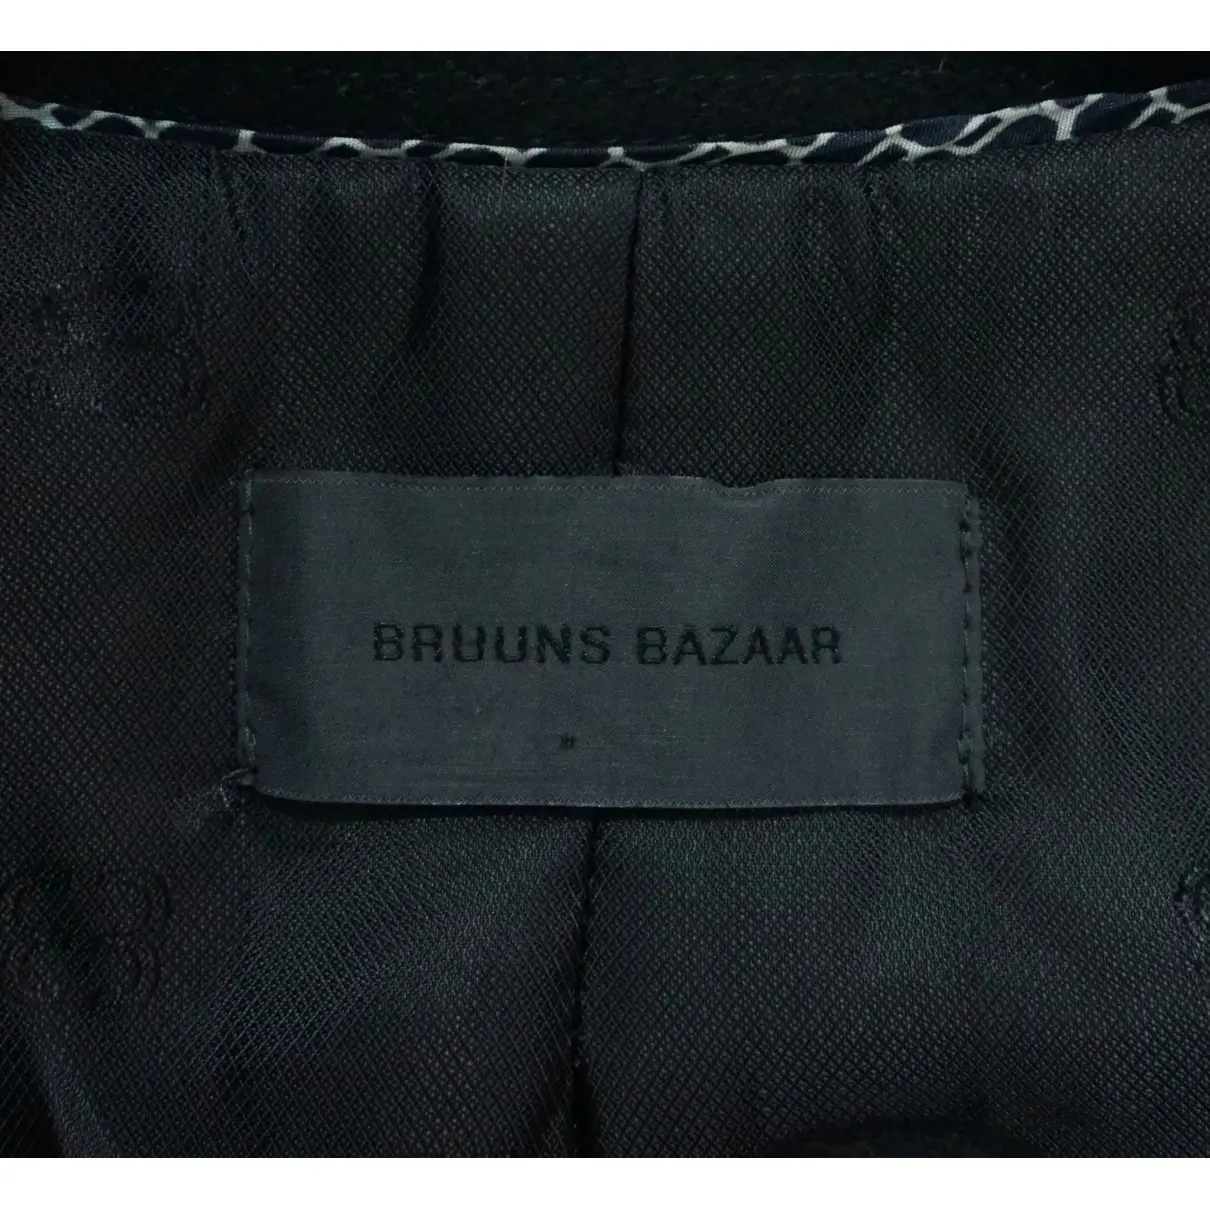 Luxury Bruuns Bazaar Coats Women